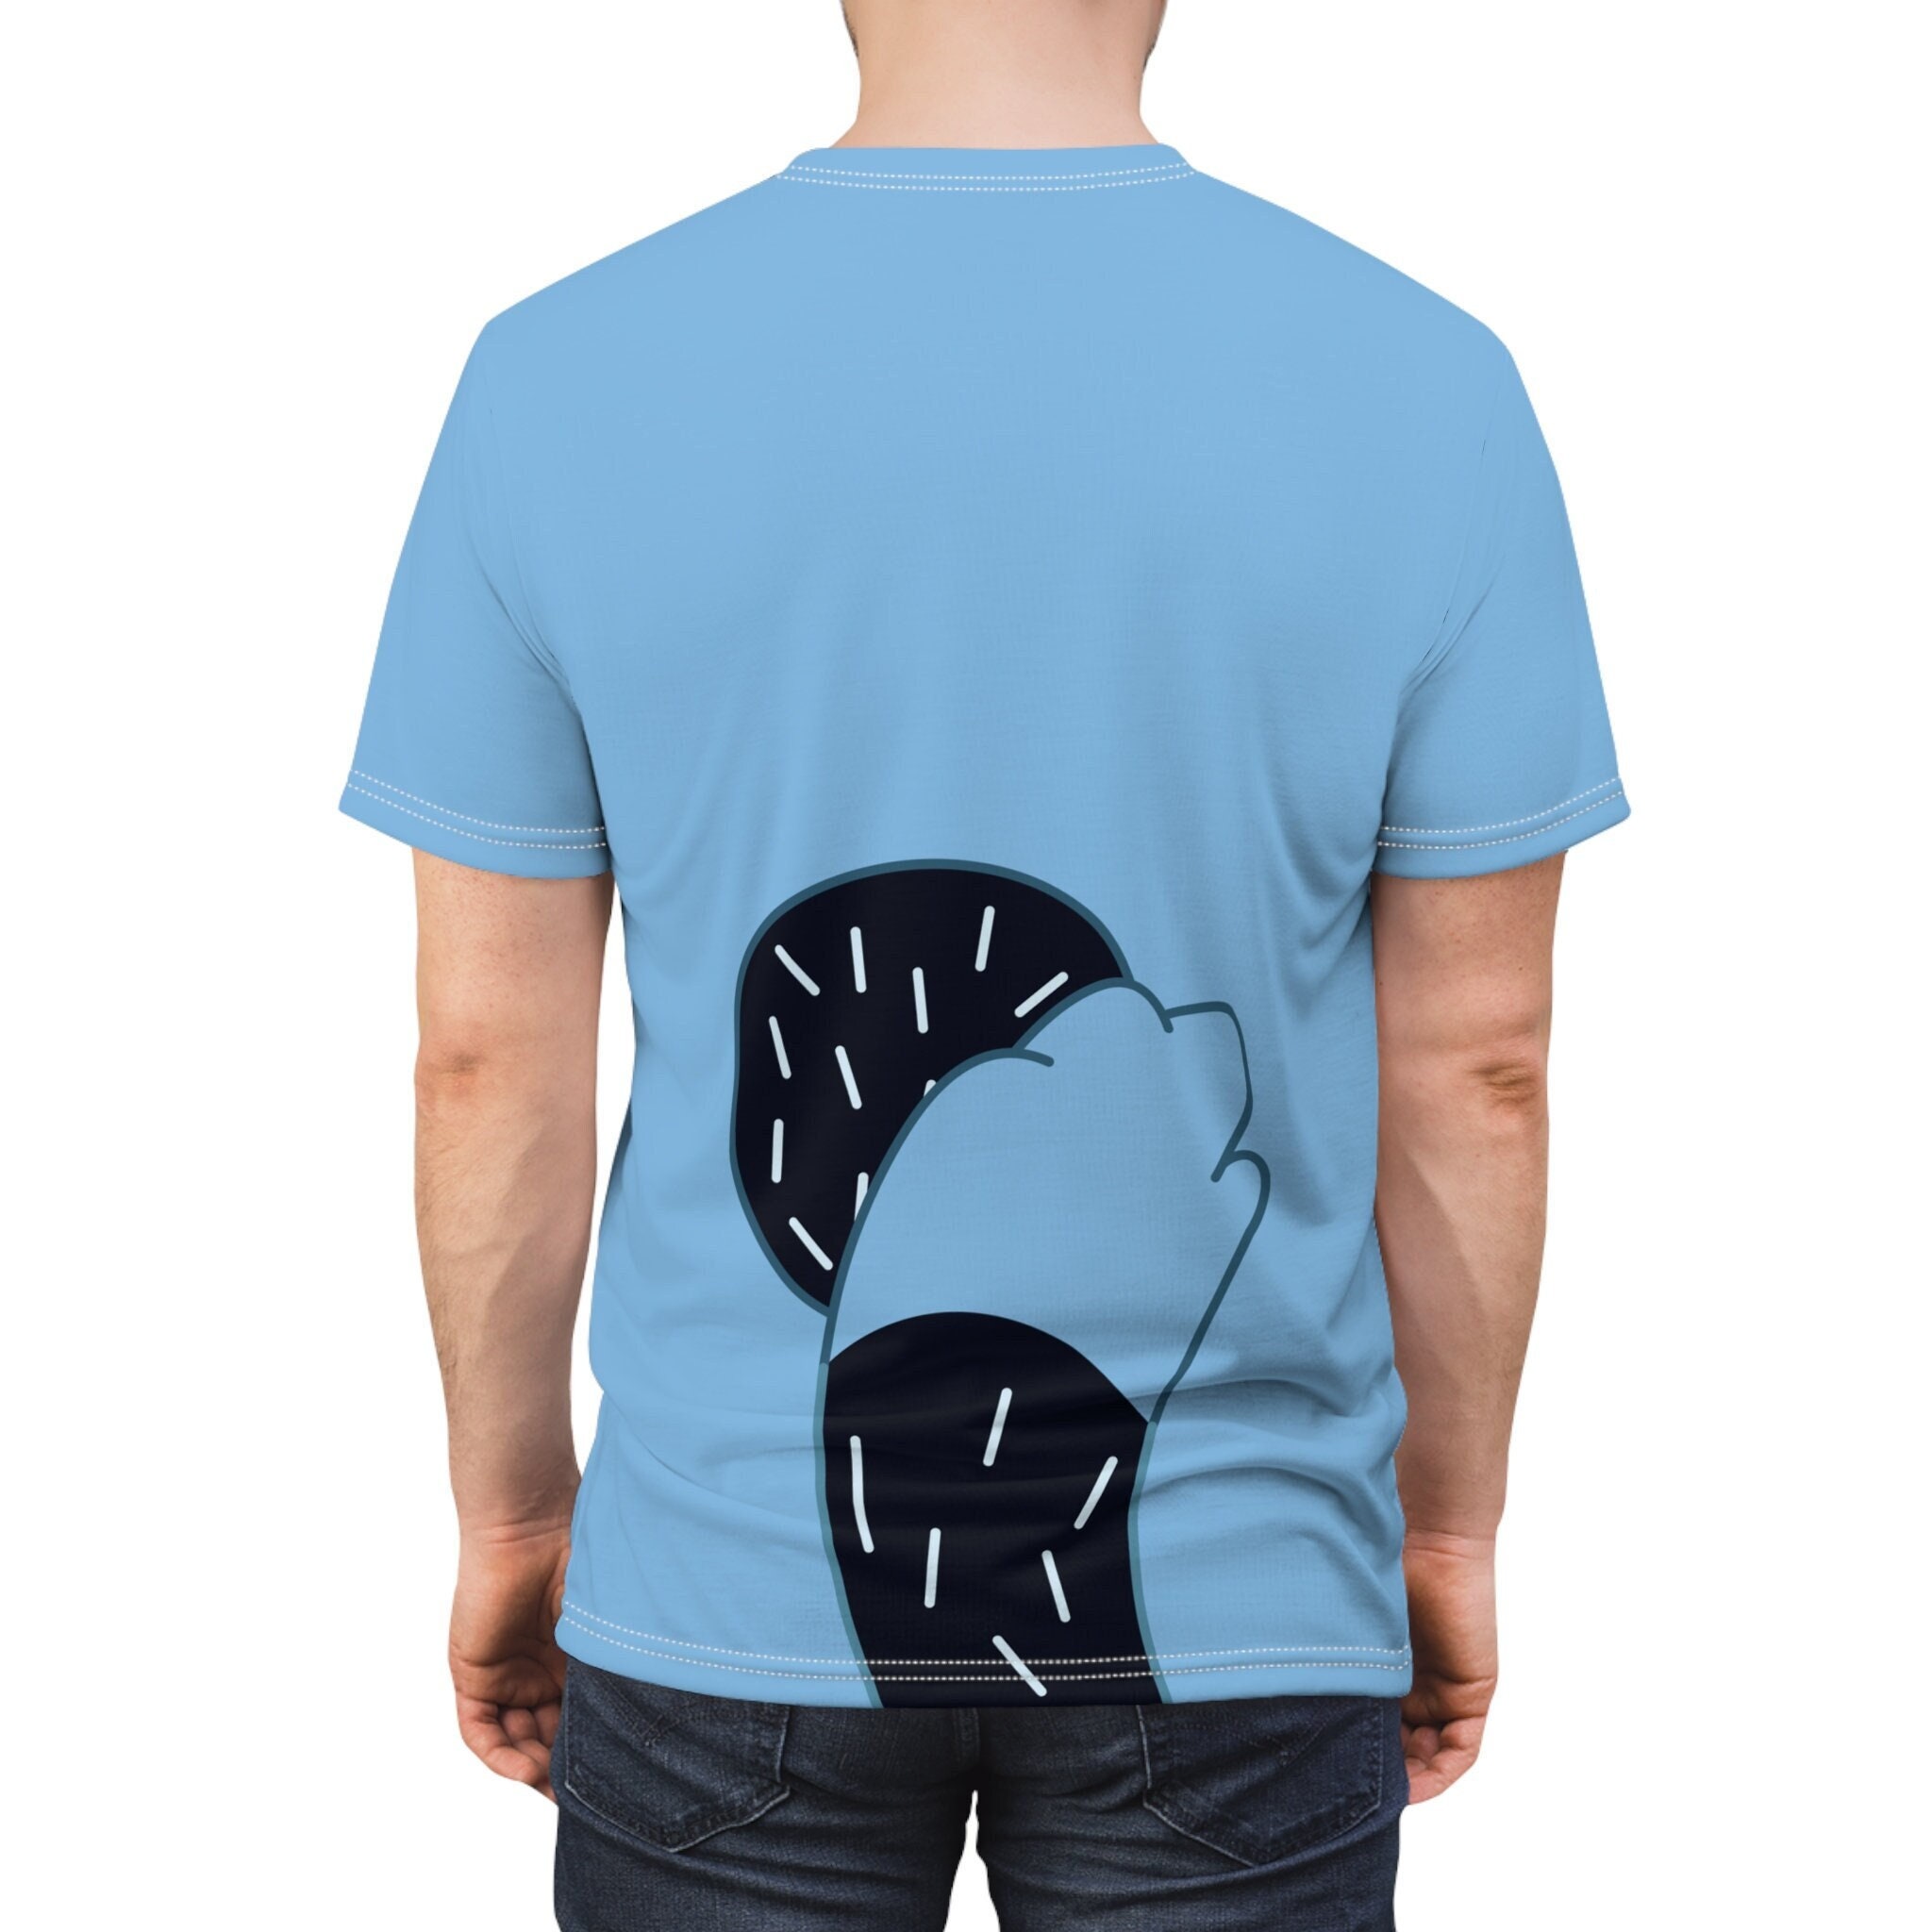 Pin Em Tshirts Roblox Gratis Para Descargar  Camisetas de halloween,  Orejas de gato y cola, Diseño de camiseta gratis